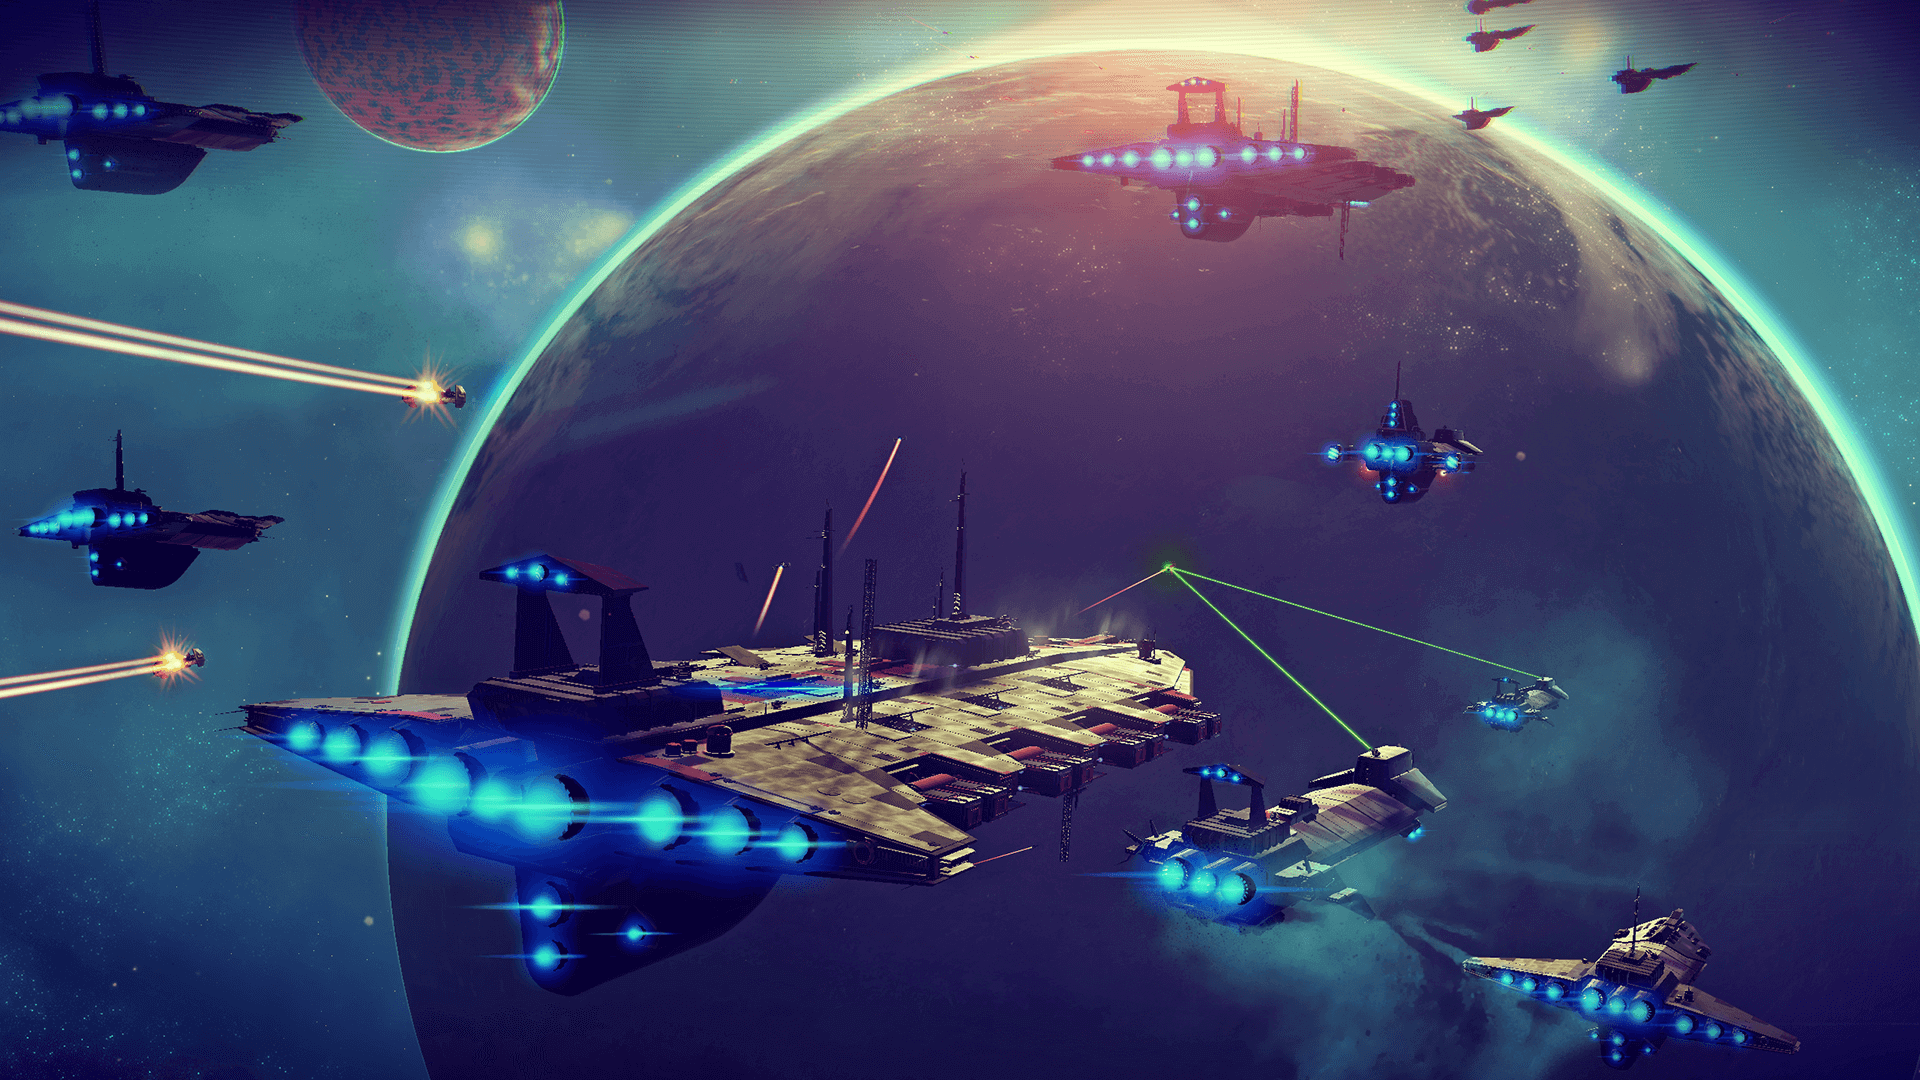 Skjermdump fra spillet No Man's sky. Mange romskip har kurs mot en planet i høy hastighet.